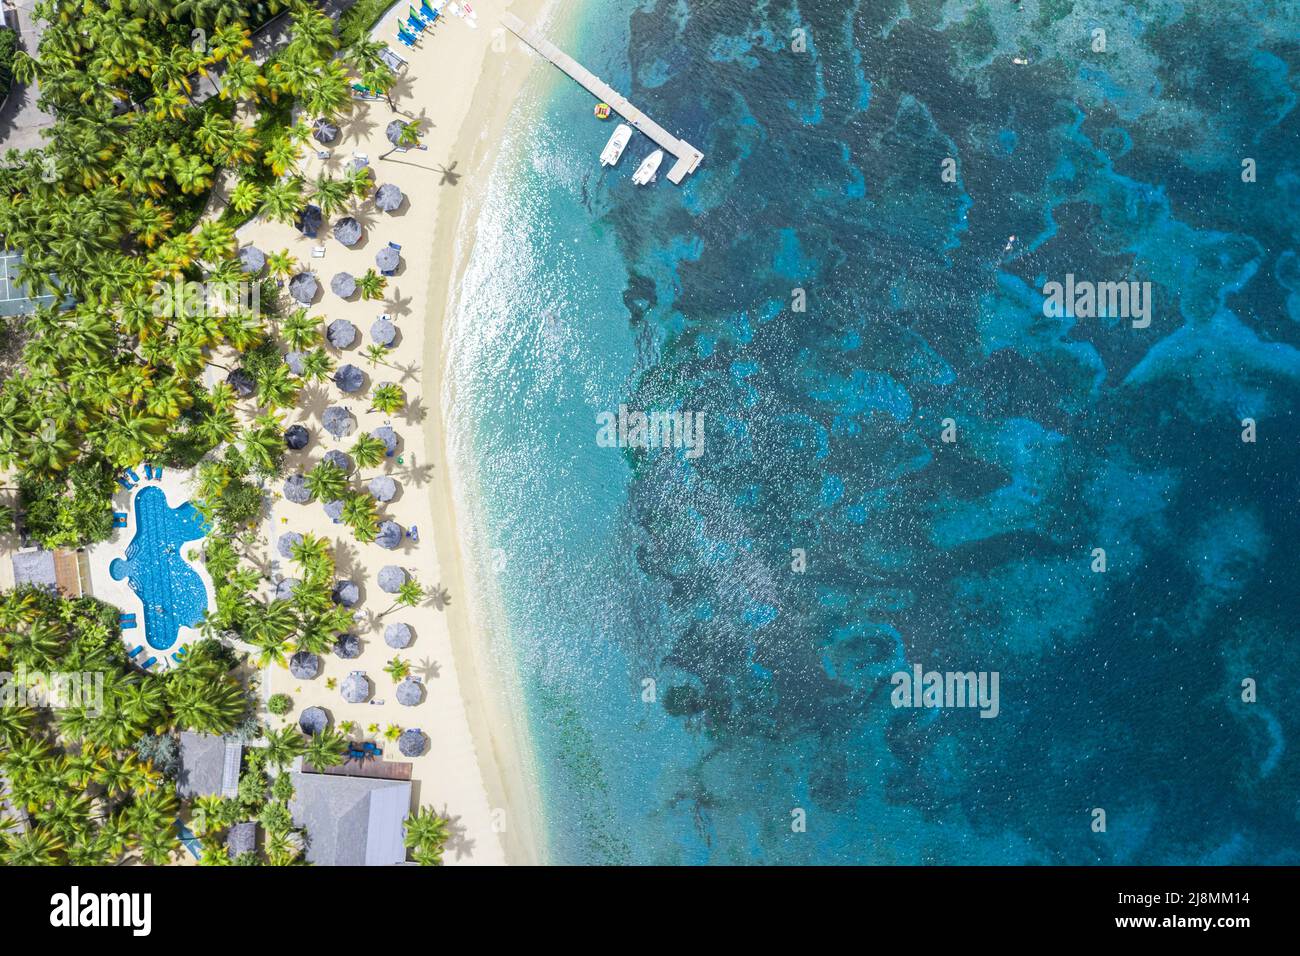 Vista aérea del complejo de lujo con piscina en una playa rodeada de palmeras tropicales junto al azul Mar Caribe, Antigua, West Indies Foto de stock